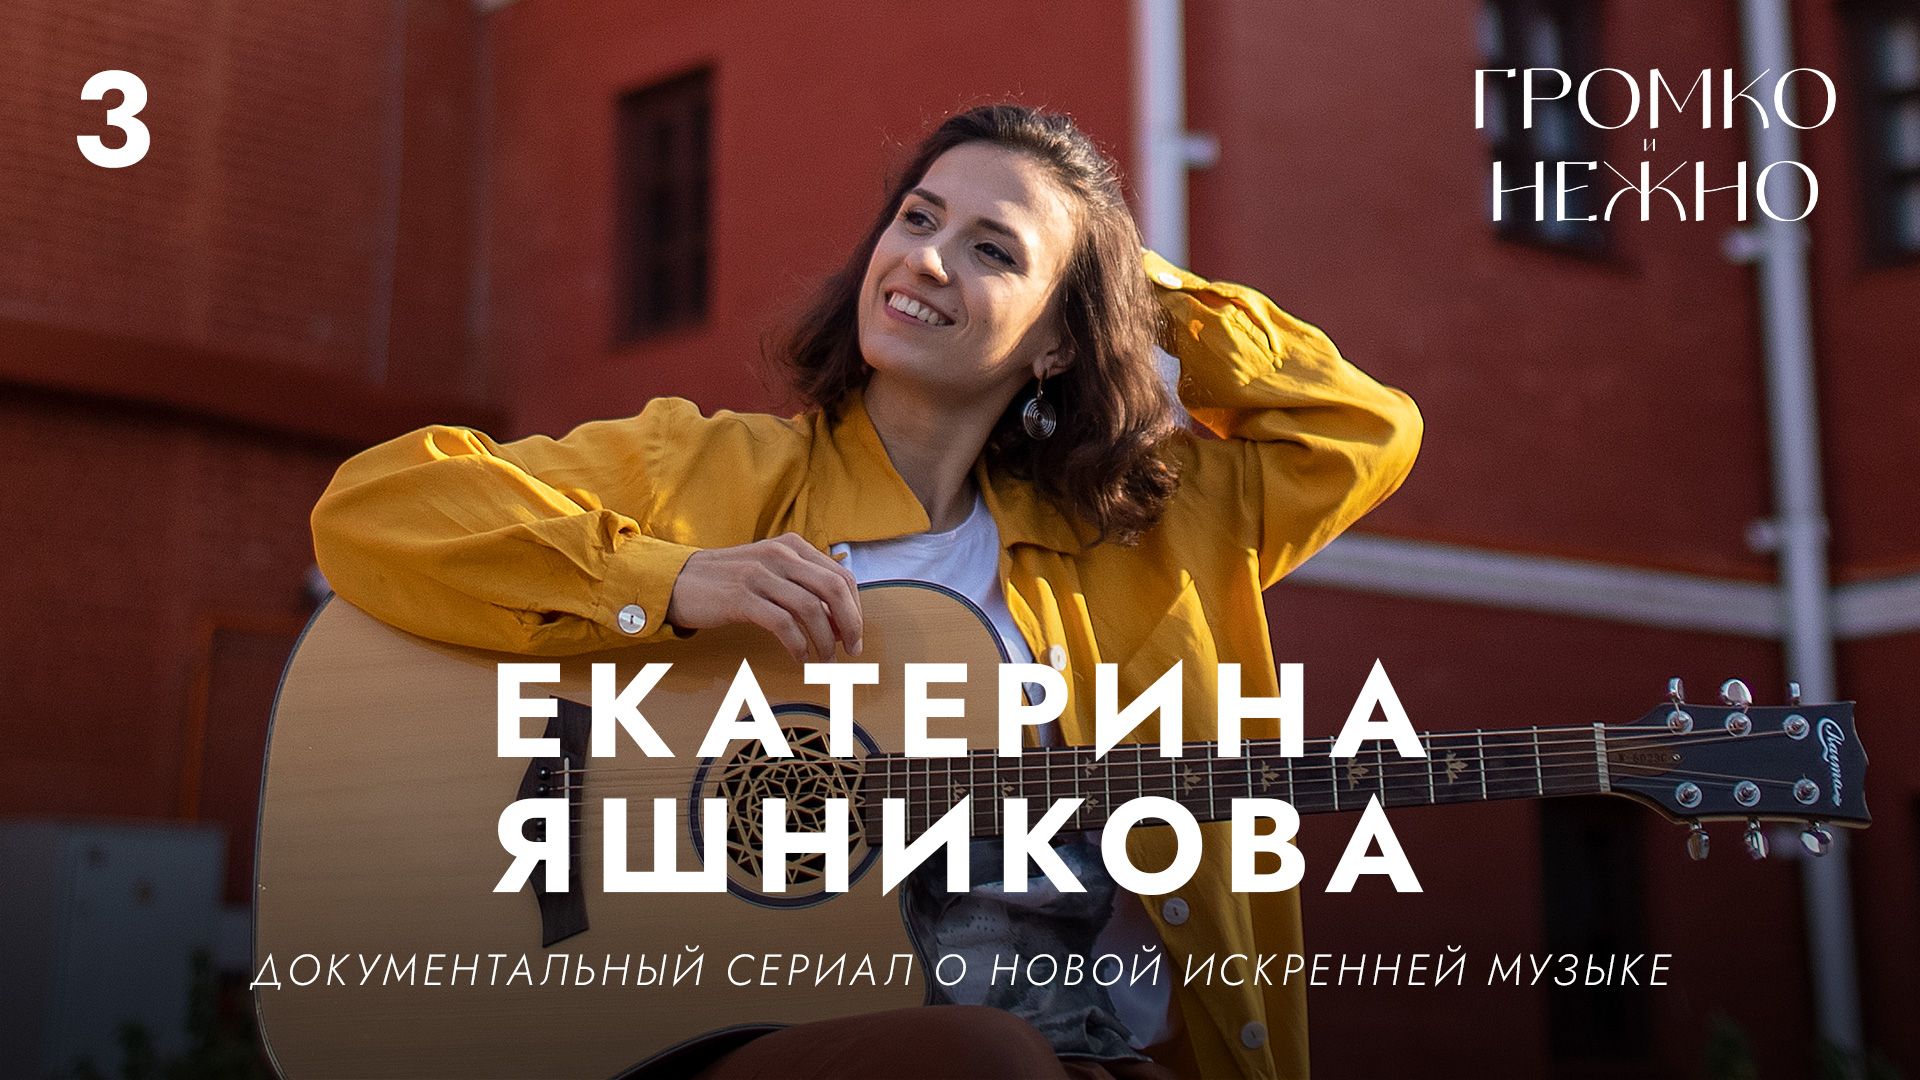 Громко и нежно • Екатерина Яшникова